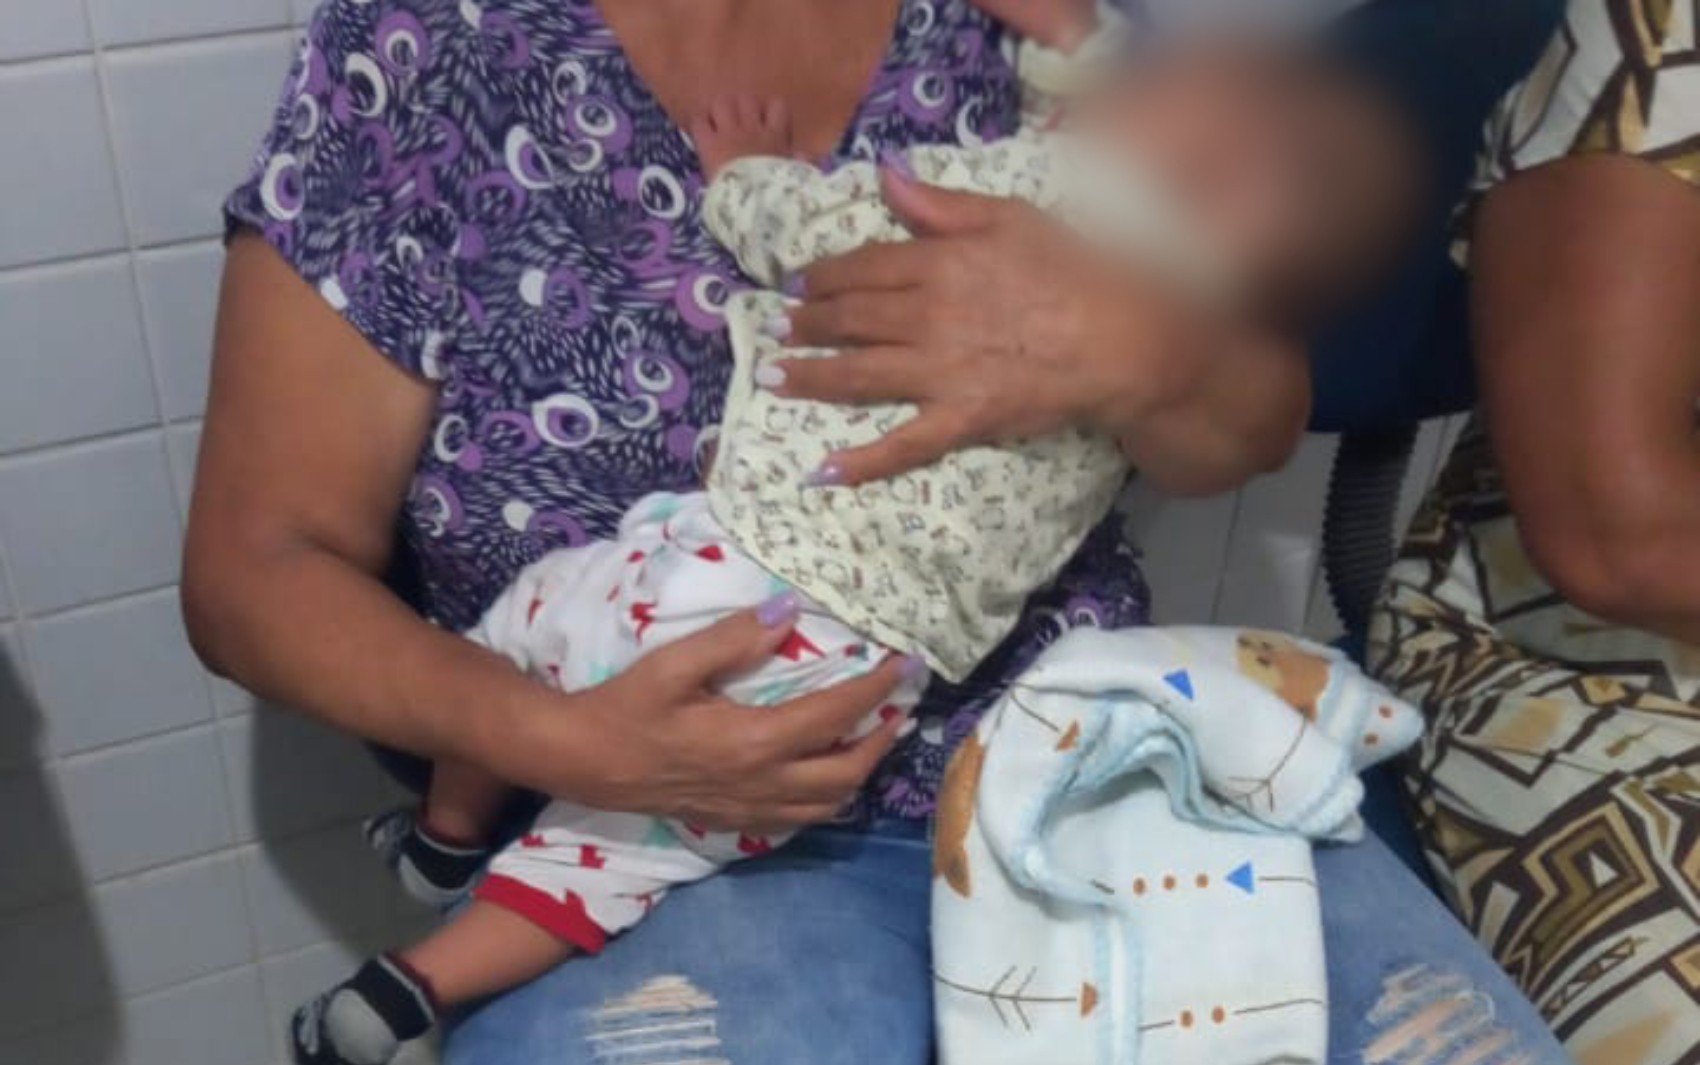 Bebê é abandonado com ferimentos e polícia prende mãe e amiga dela em flagrante